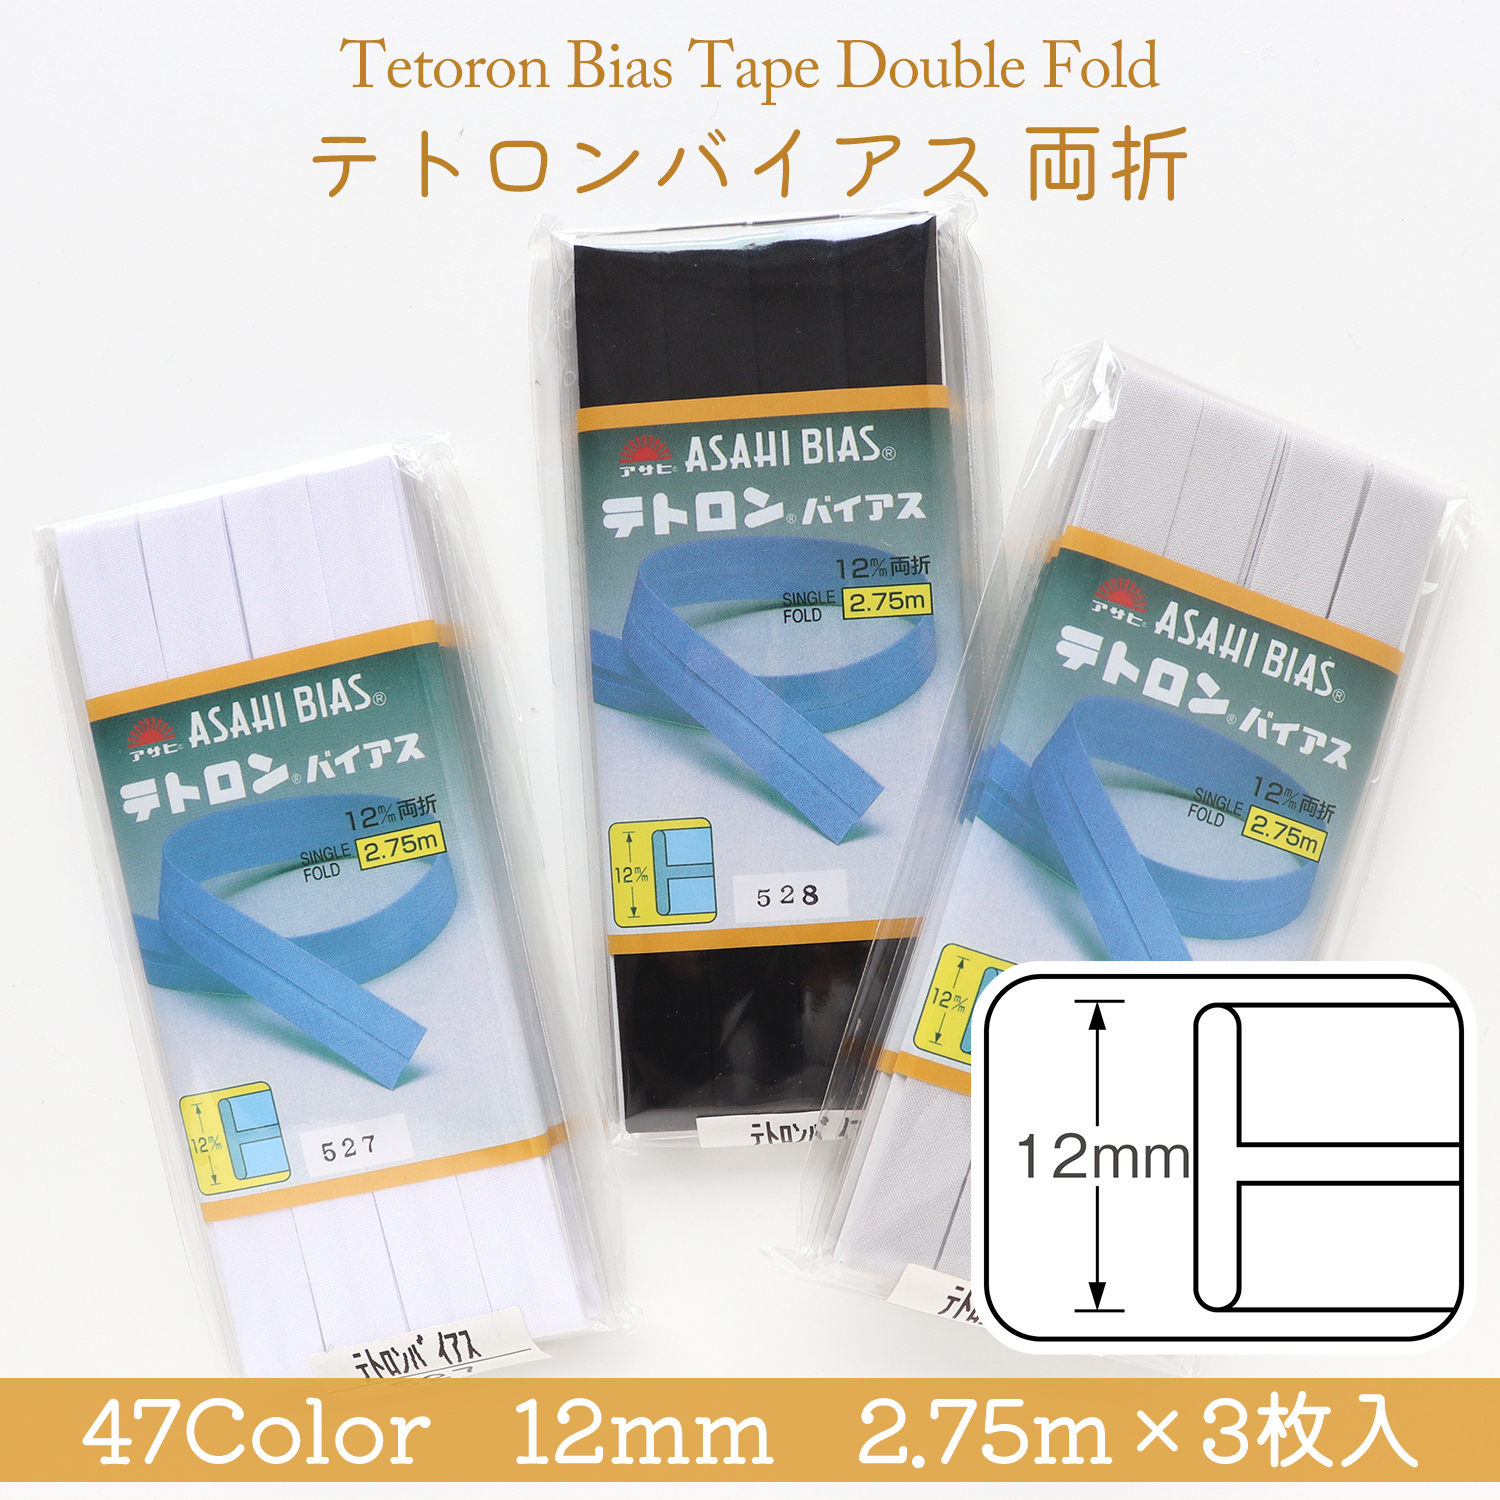 Tetoron Bias Tape Double Fold 12mm　2.75m 3pcs (box)